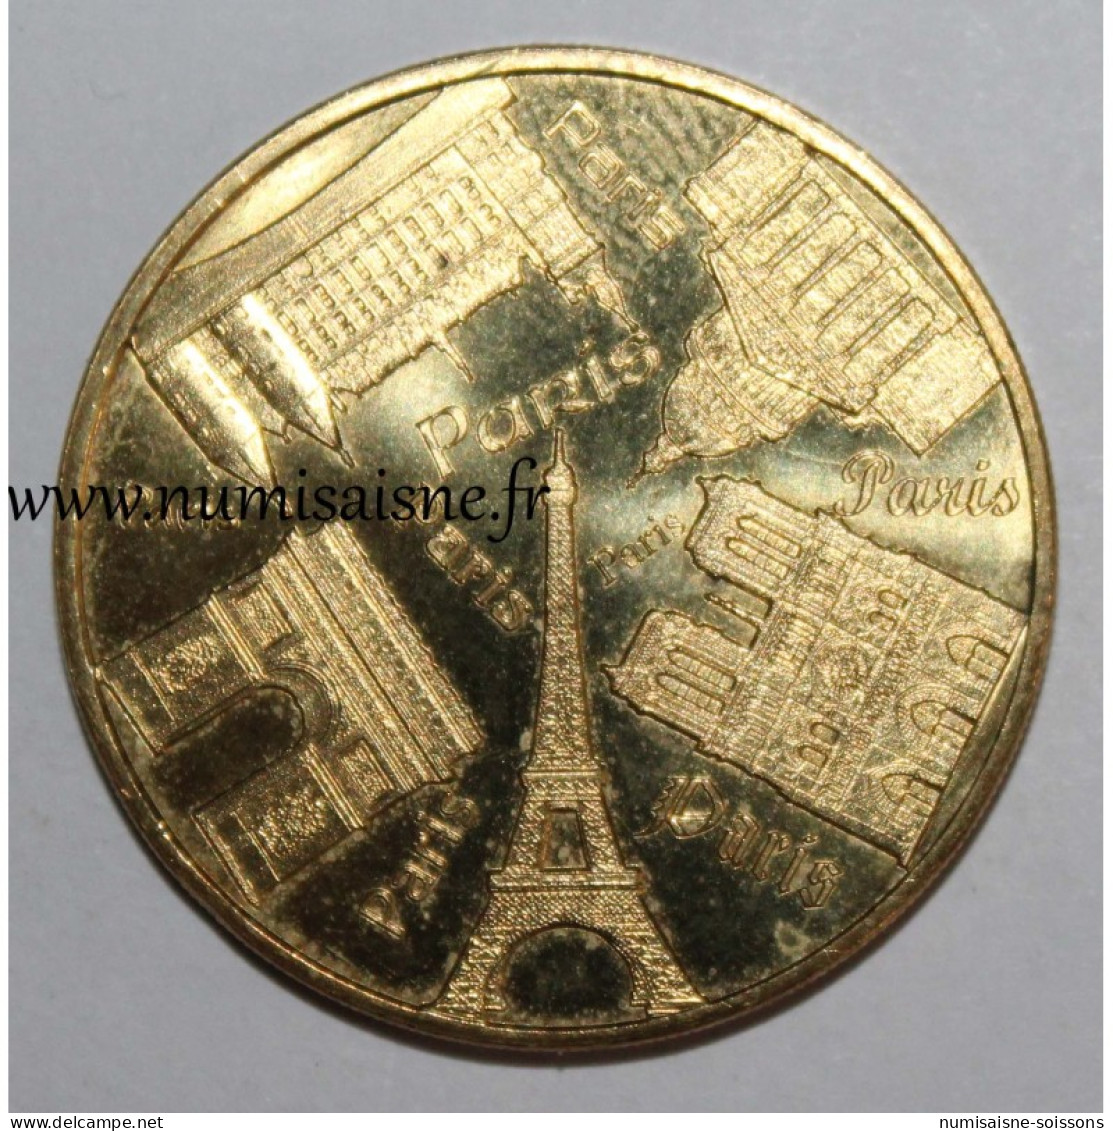 75 - PARIS - CENTRE DES MONUMENTS NATIONAUX - Monnaie De Paris - 2017 - Non-datés